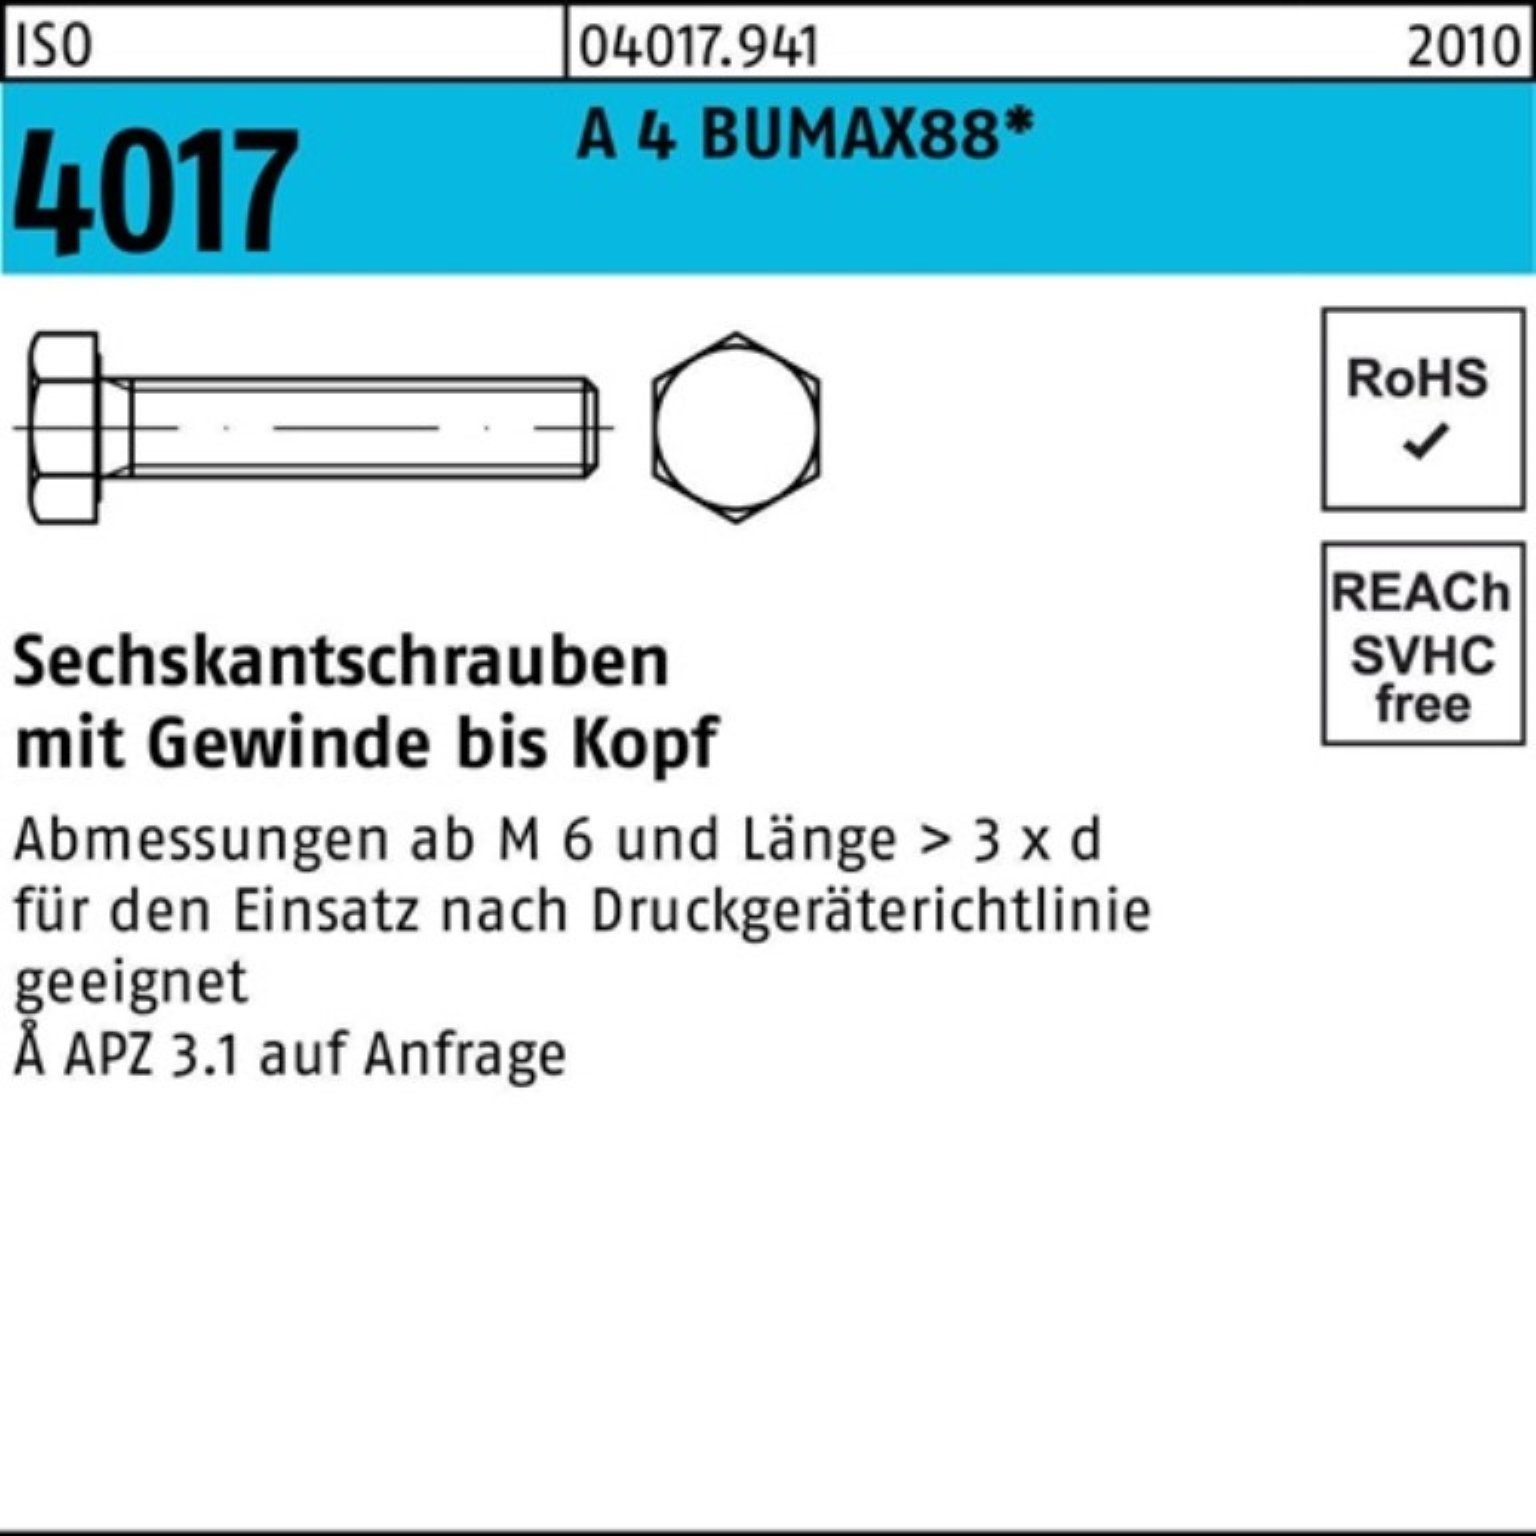 Bufab Sechskantschraube 100er Pack Sechskantschraube ISO 4017 VG M12x 40 A 4 BUMAX88 25 Stück